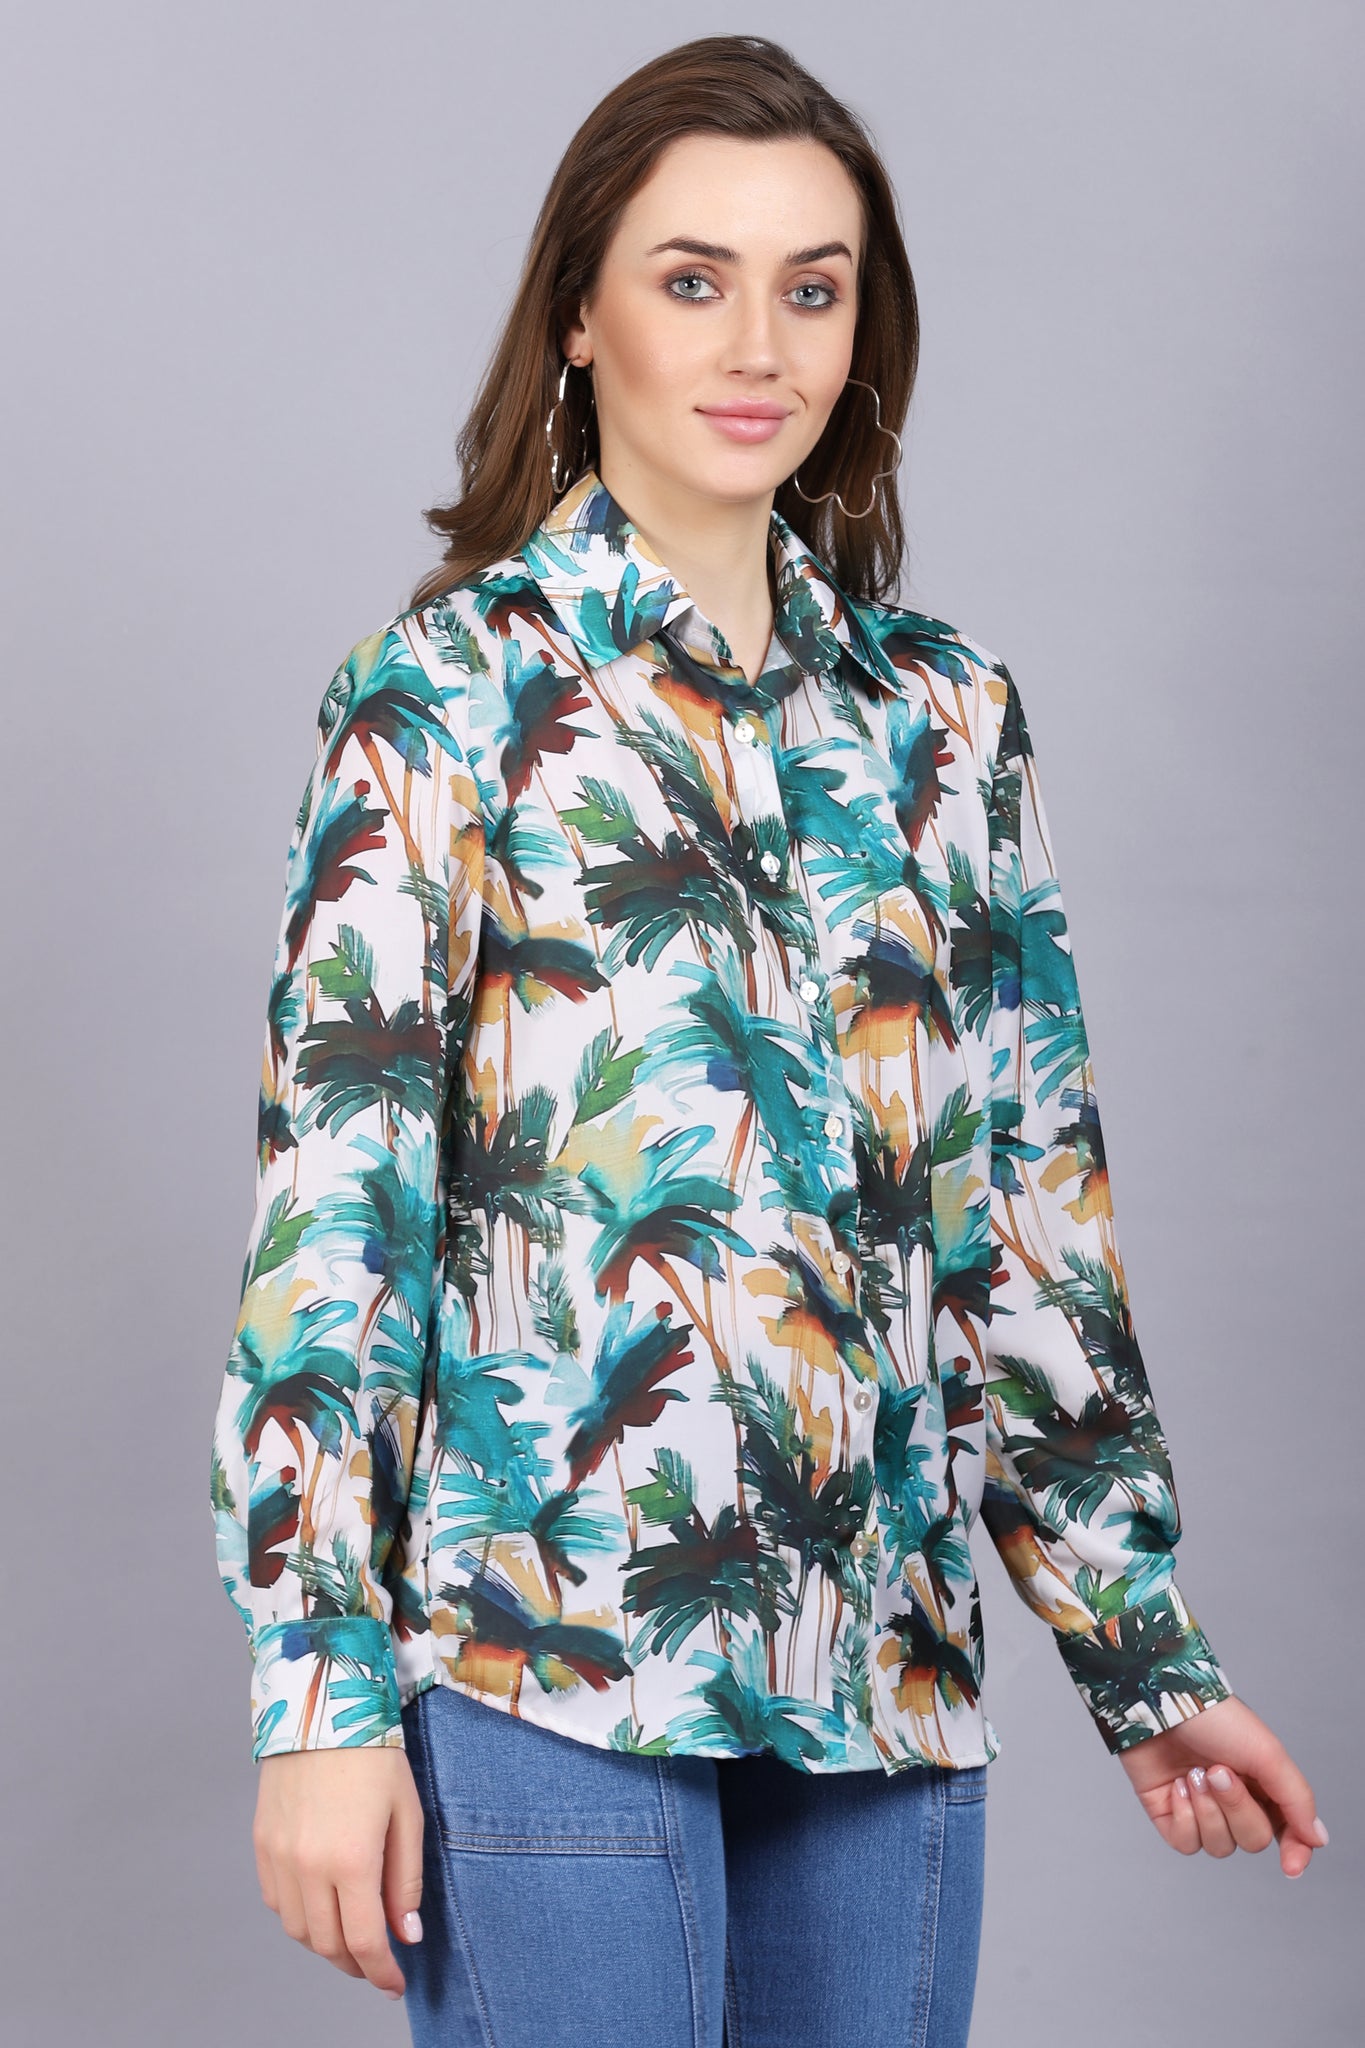 Lovely Tropical Shirt For Women